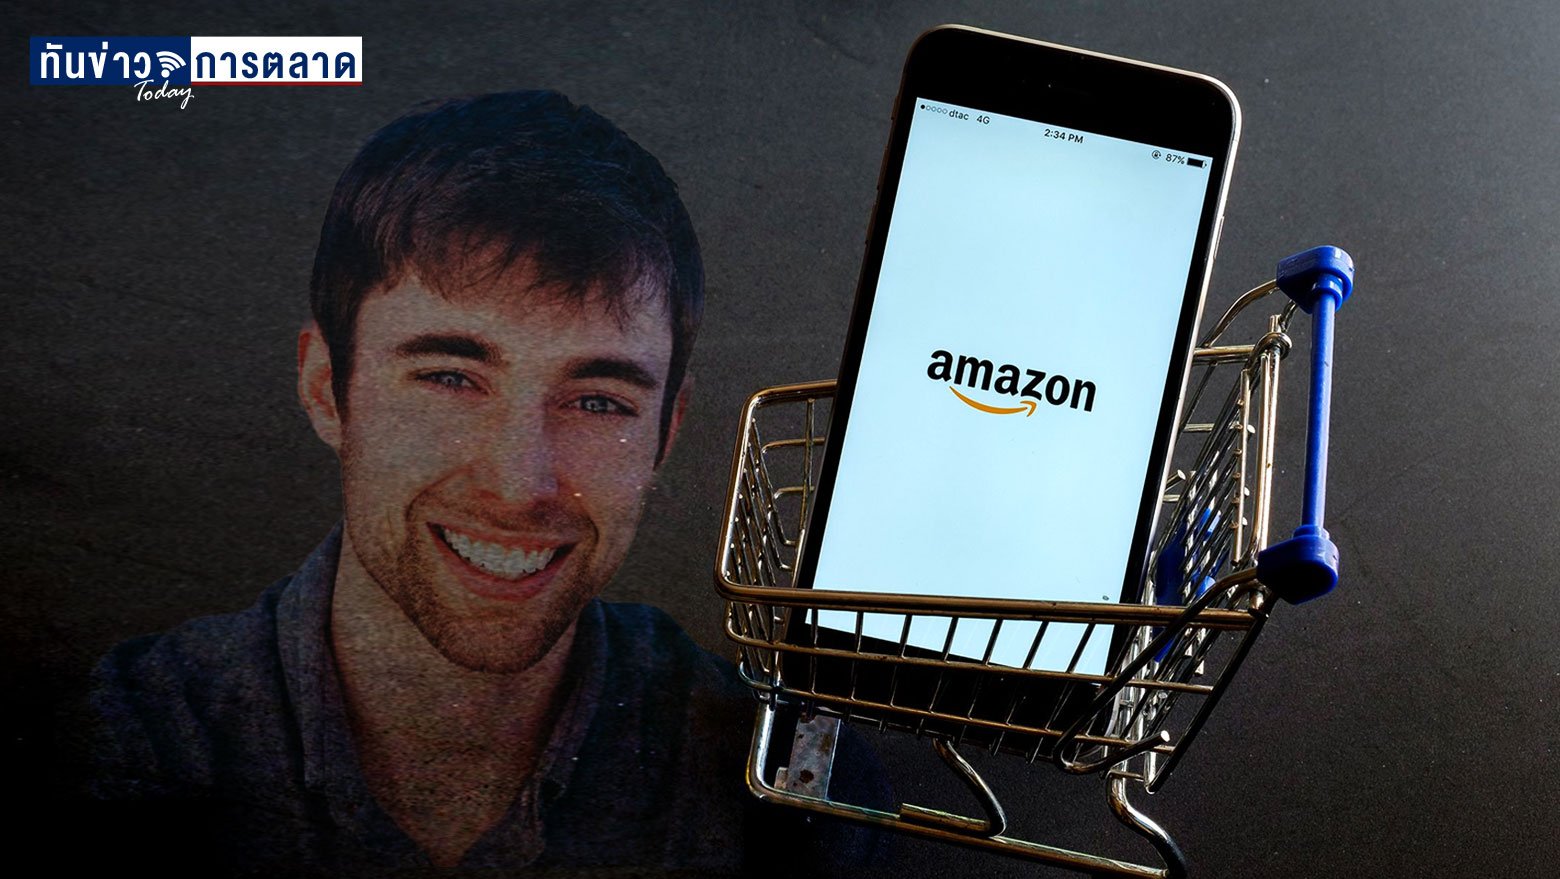 หนุ่มสหรัฐฯกลายเป็นเศรษฐี ด้วยการหาซื้อสินค้าที่ลดราคาจากห้าง แล้วนำไปวางขายบนเว็บไซต์ชื่อดังอย่าง Amazon